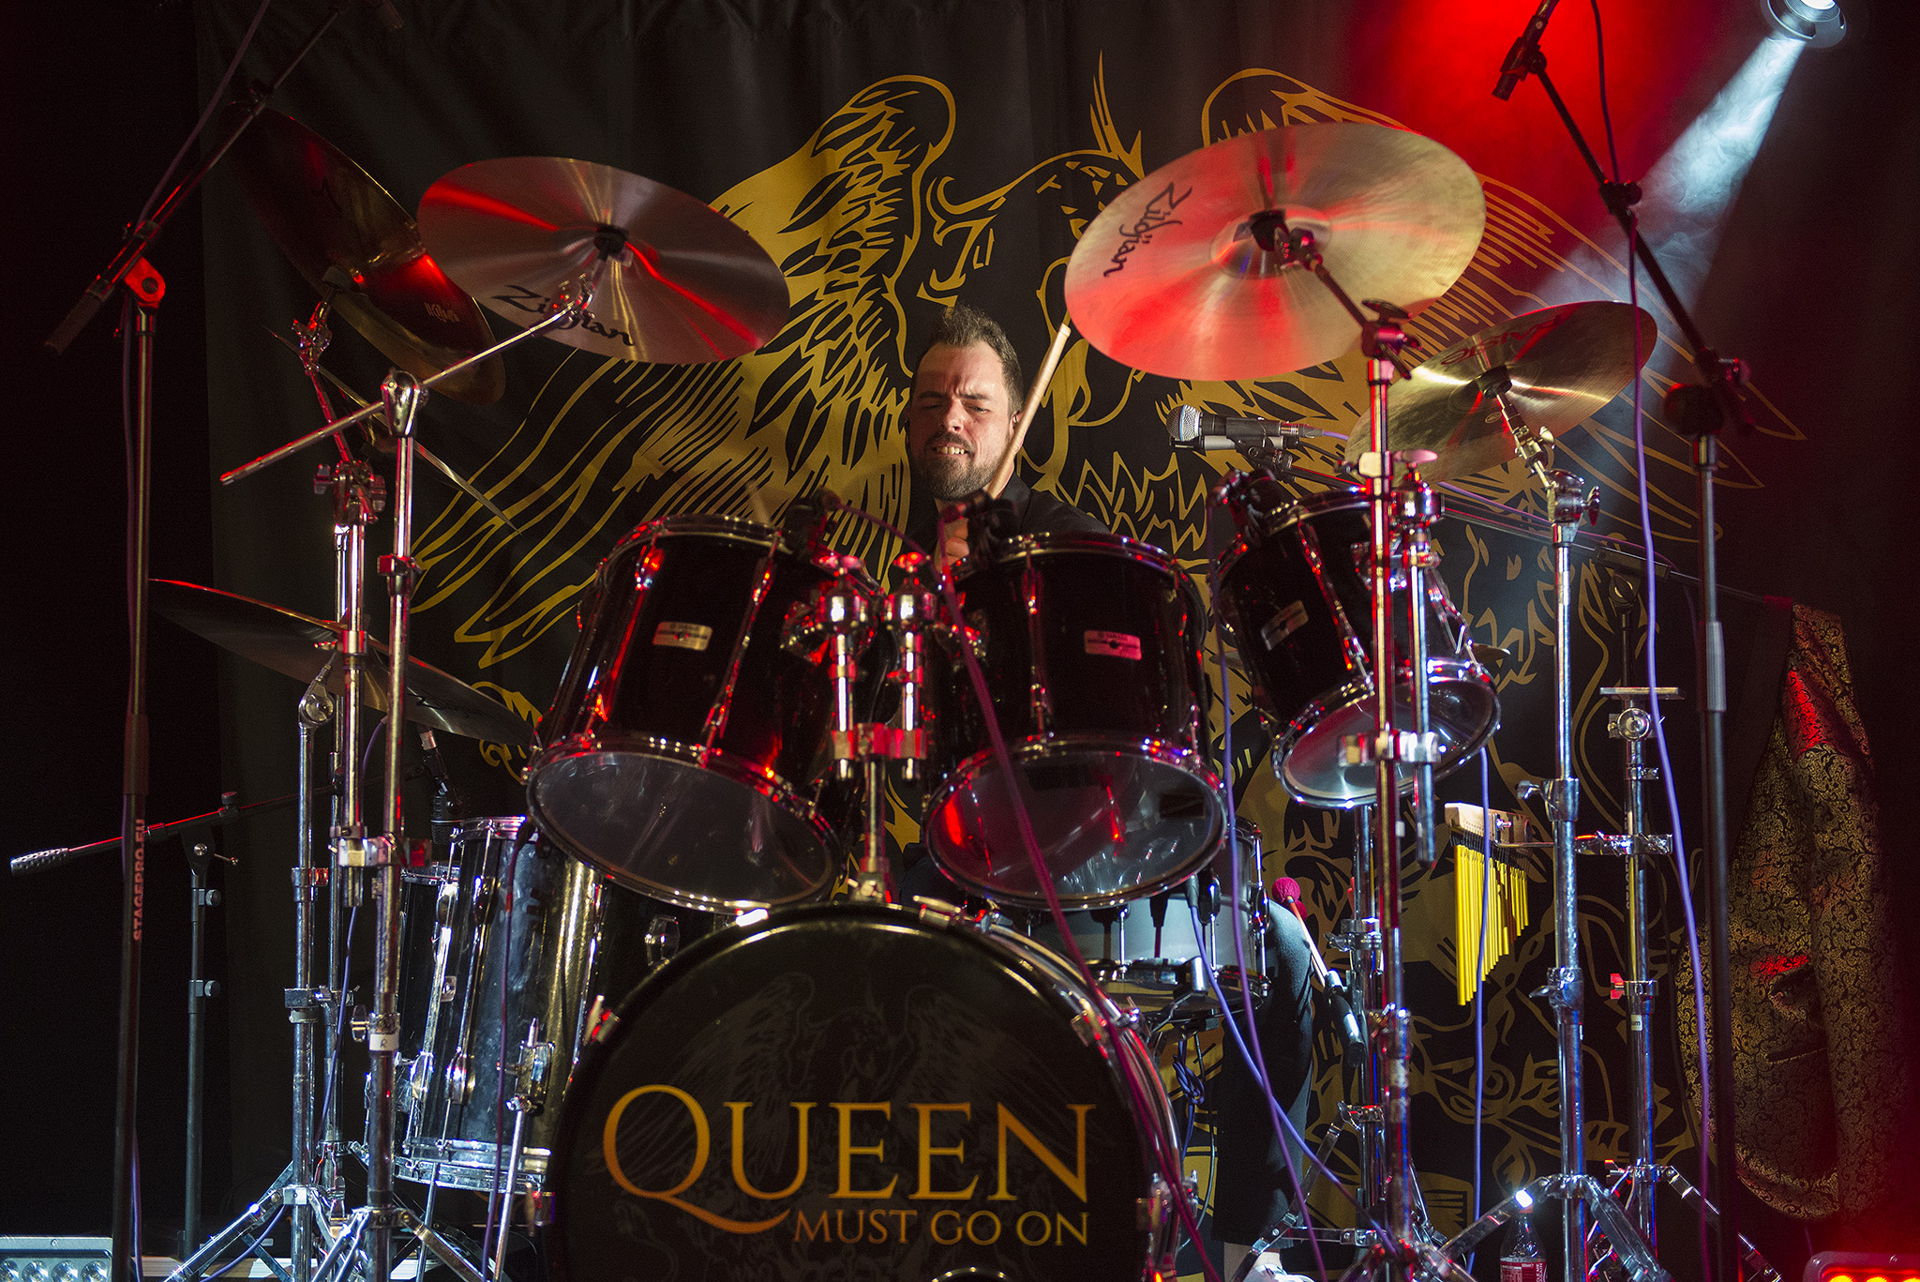 Queen must go on op 8 april in Het Podium, foto's door Wijnand Krikke